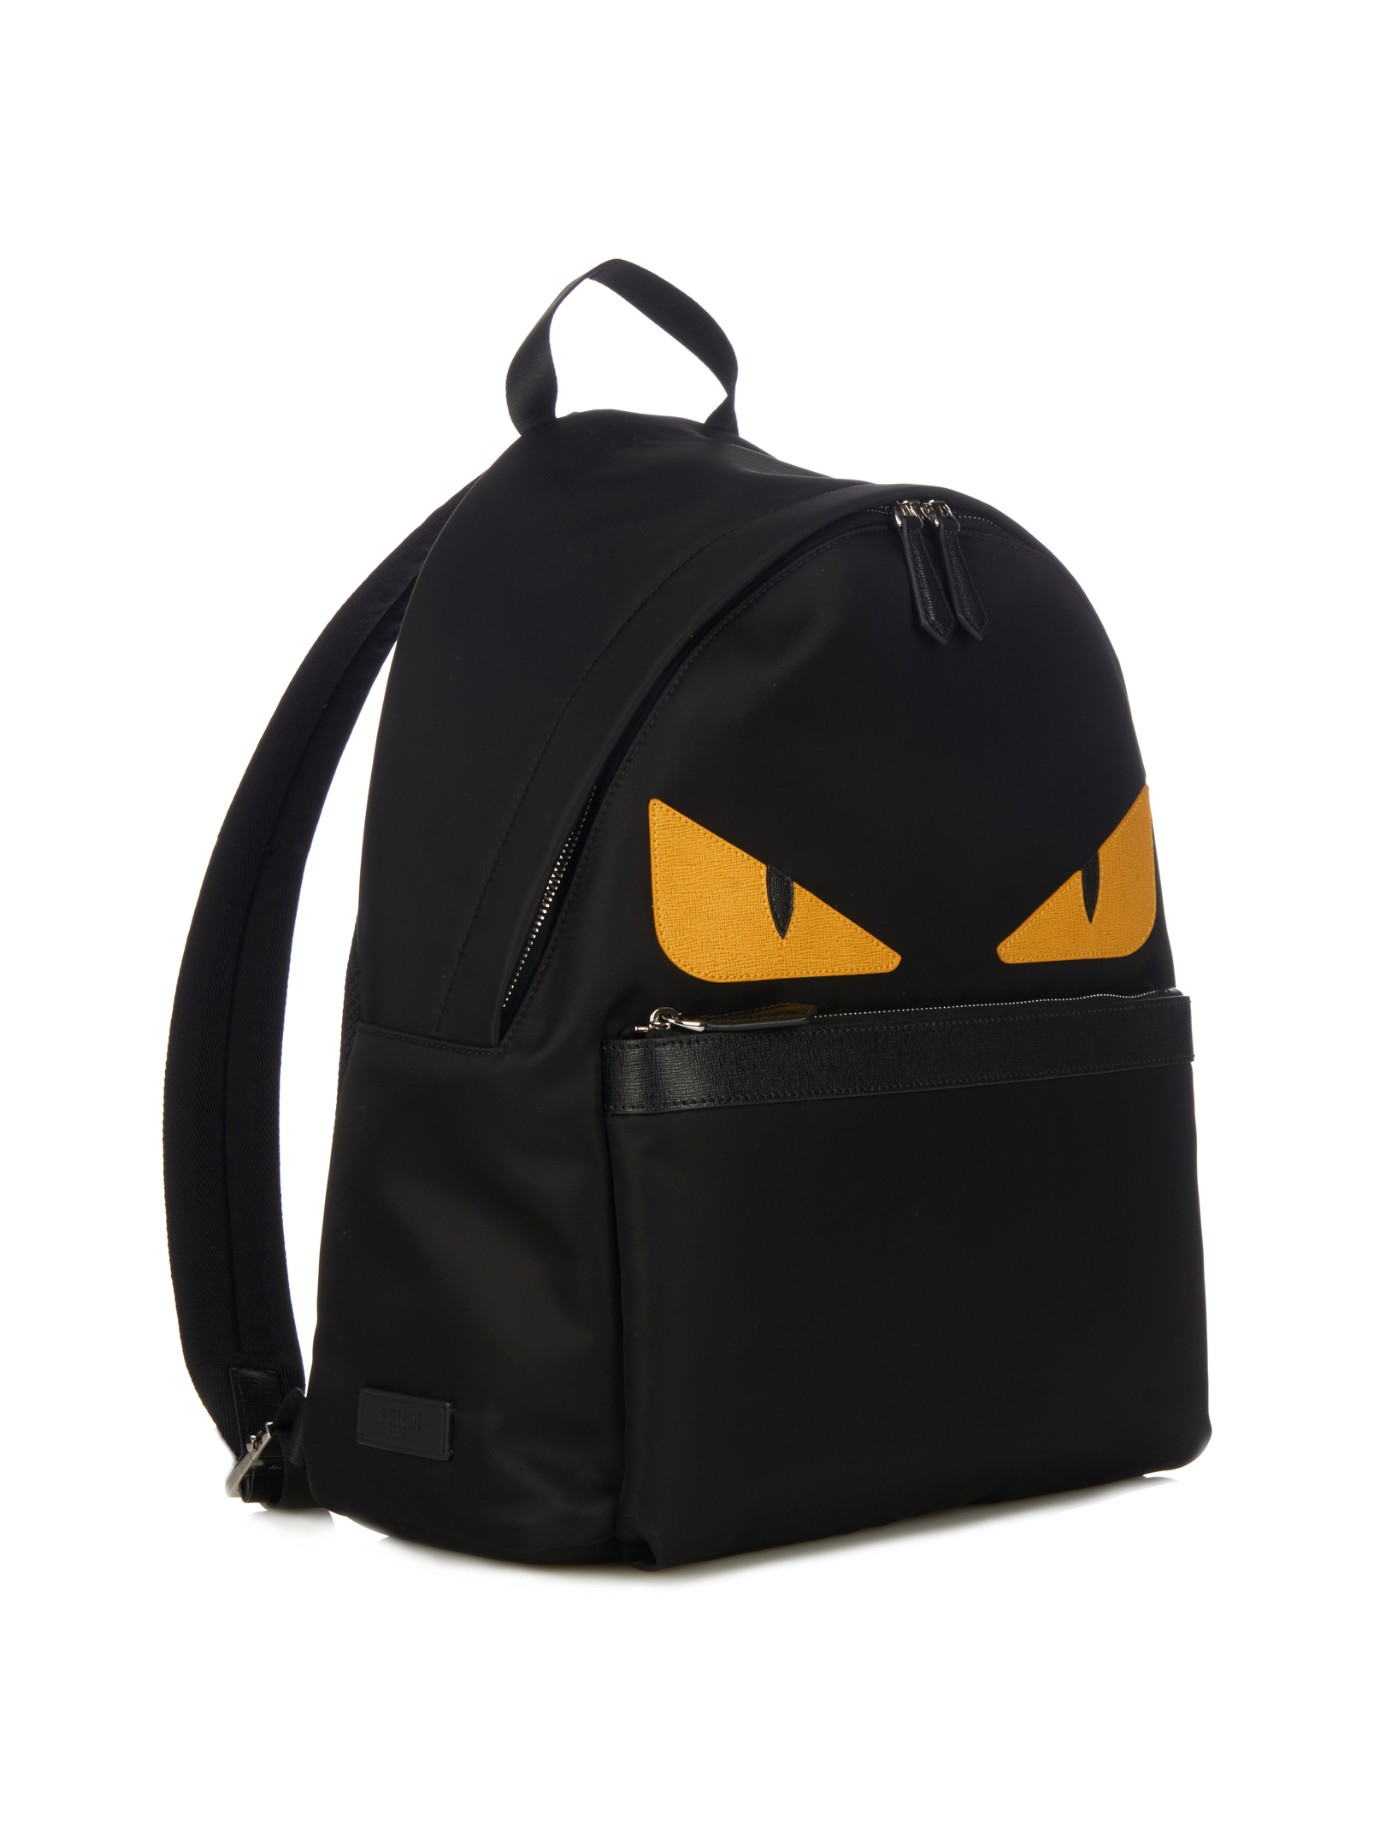 fendi black nylon backpack